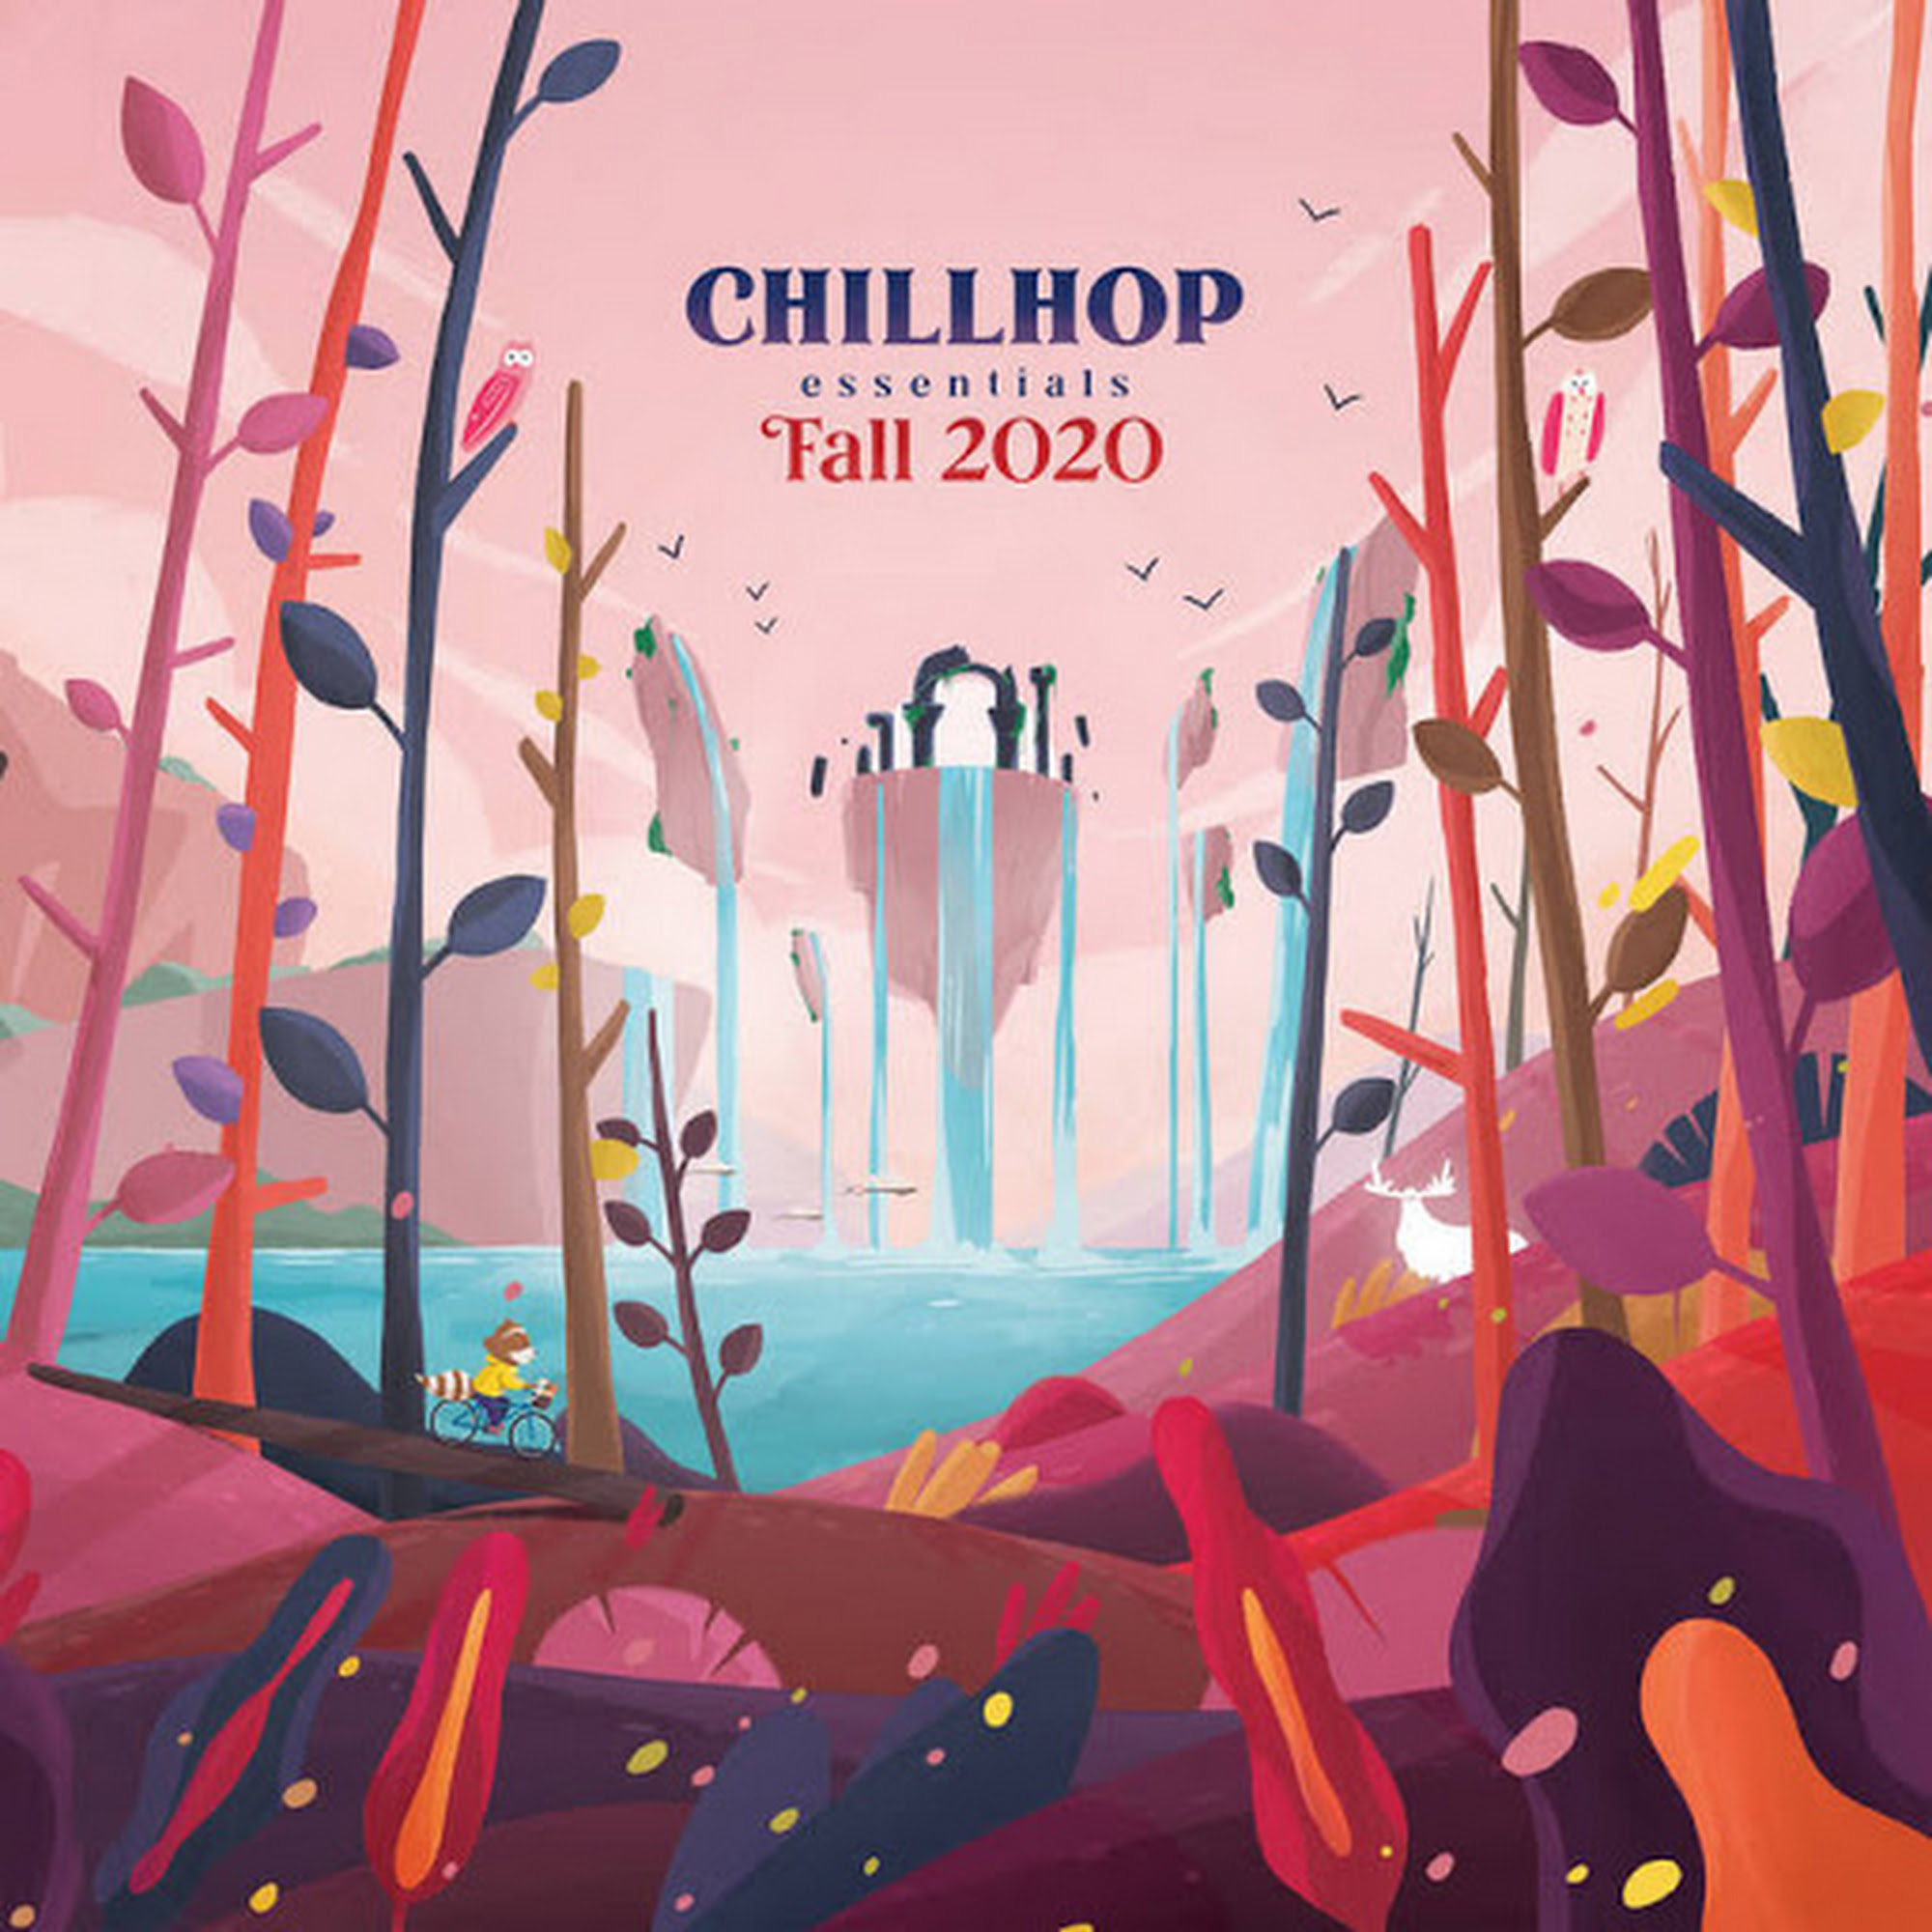 Chillhop Essentials Fall 2020 Full Album Stream und VinylTipp